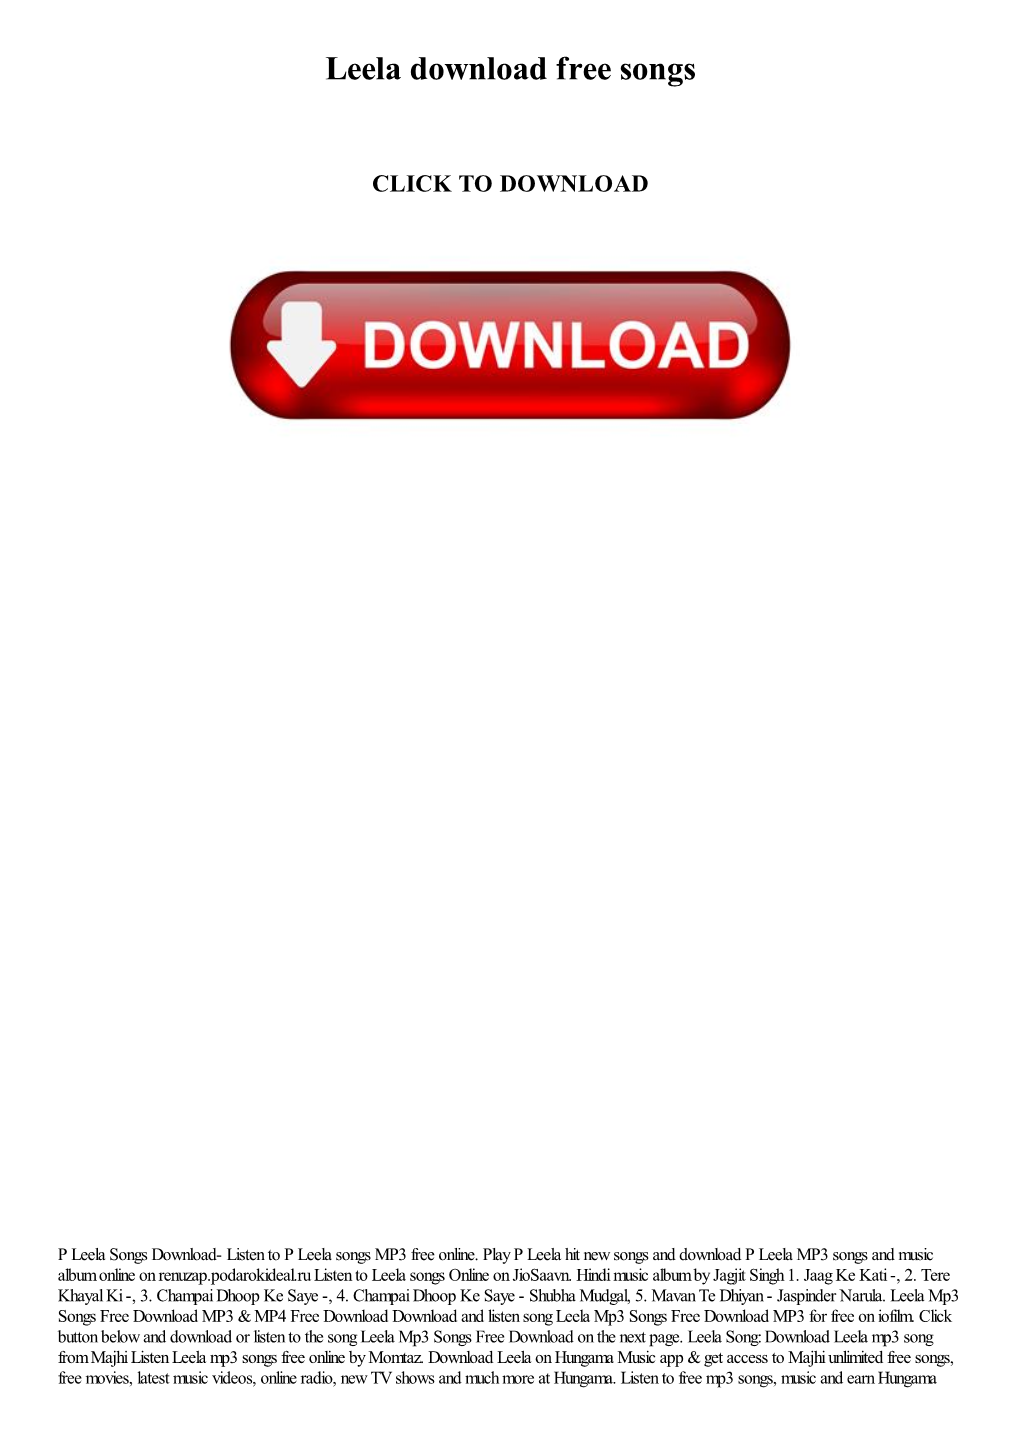 Leela Download Free Songs